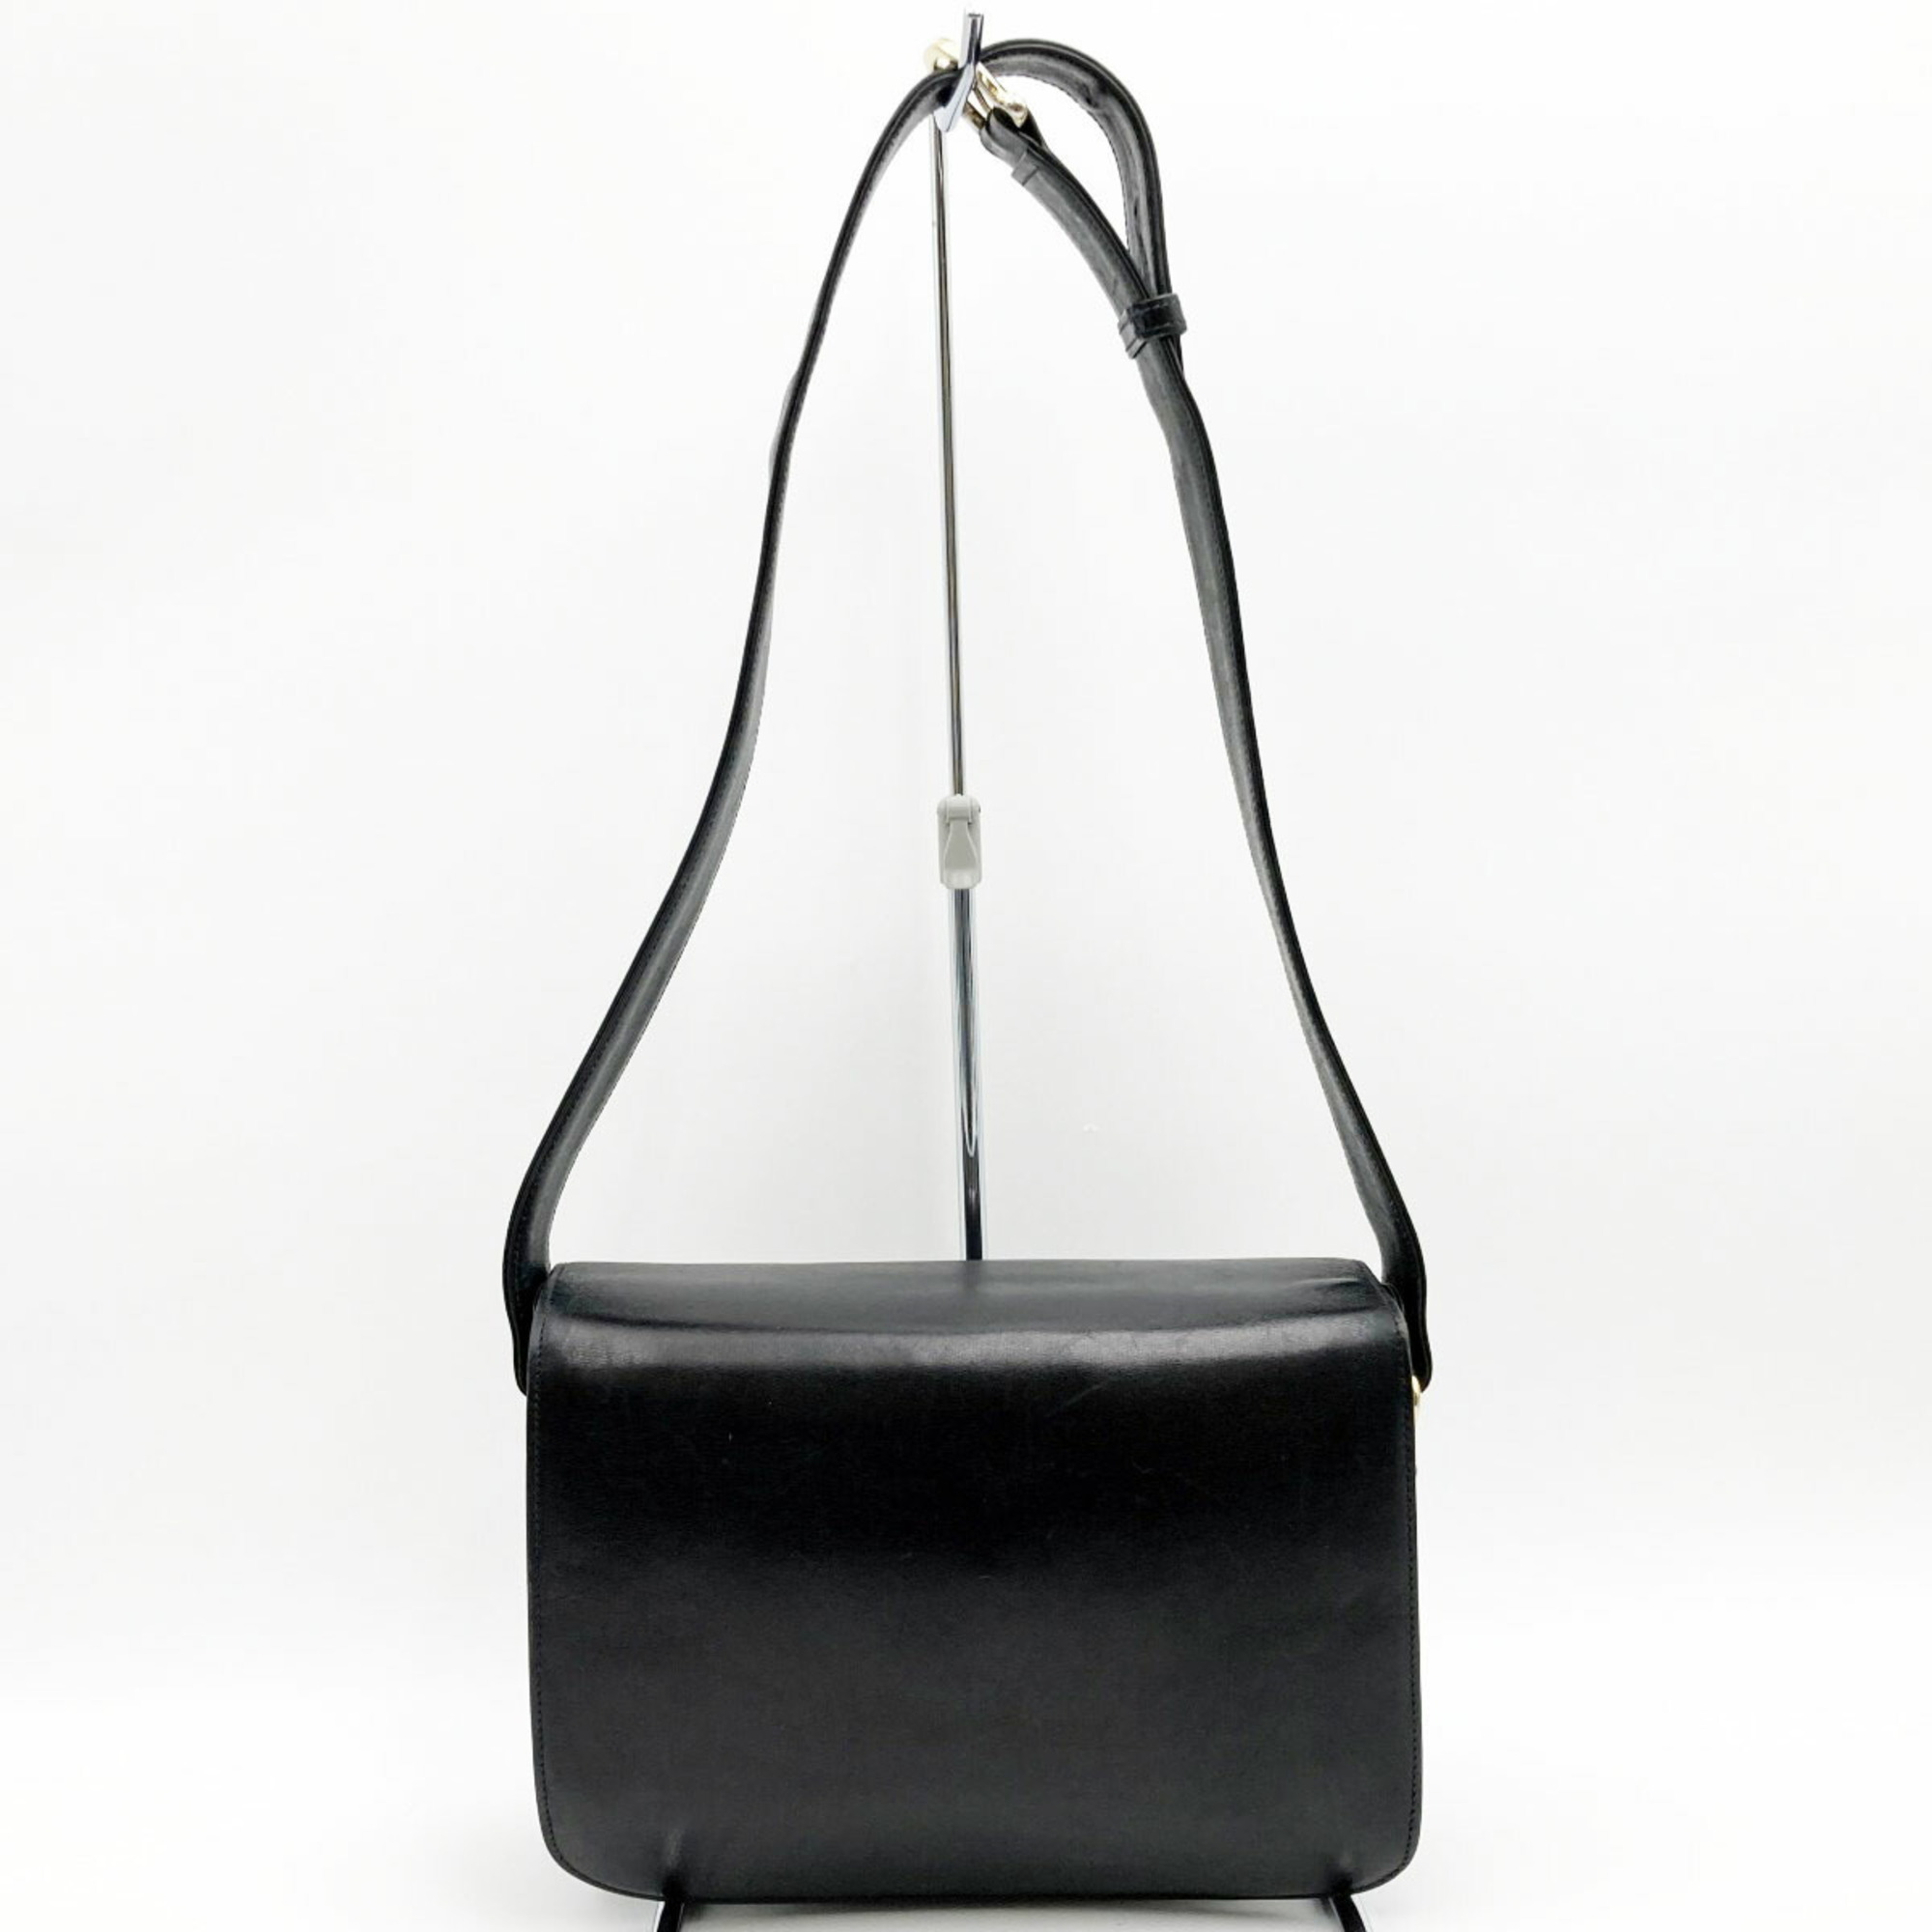 CELINE Carriage hardware shoulder bag black gold leather ladies fashion vintage USED